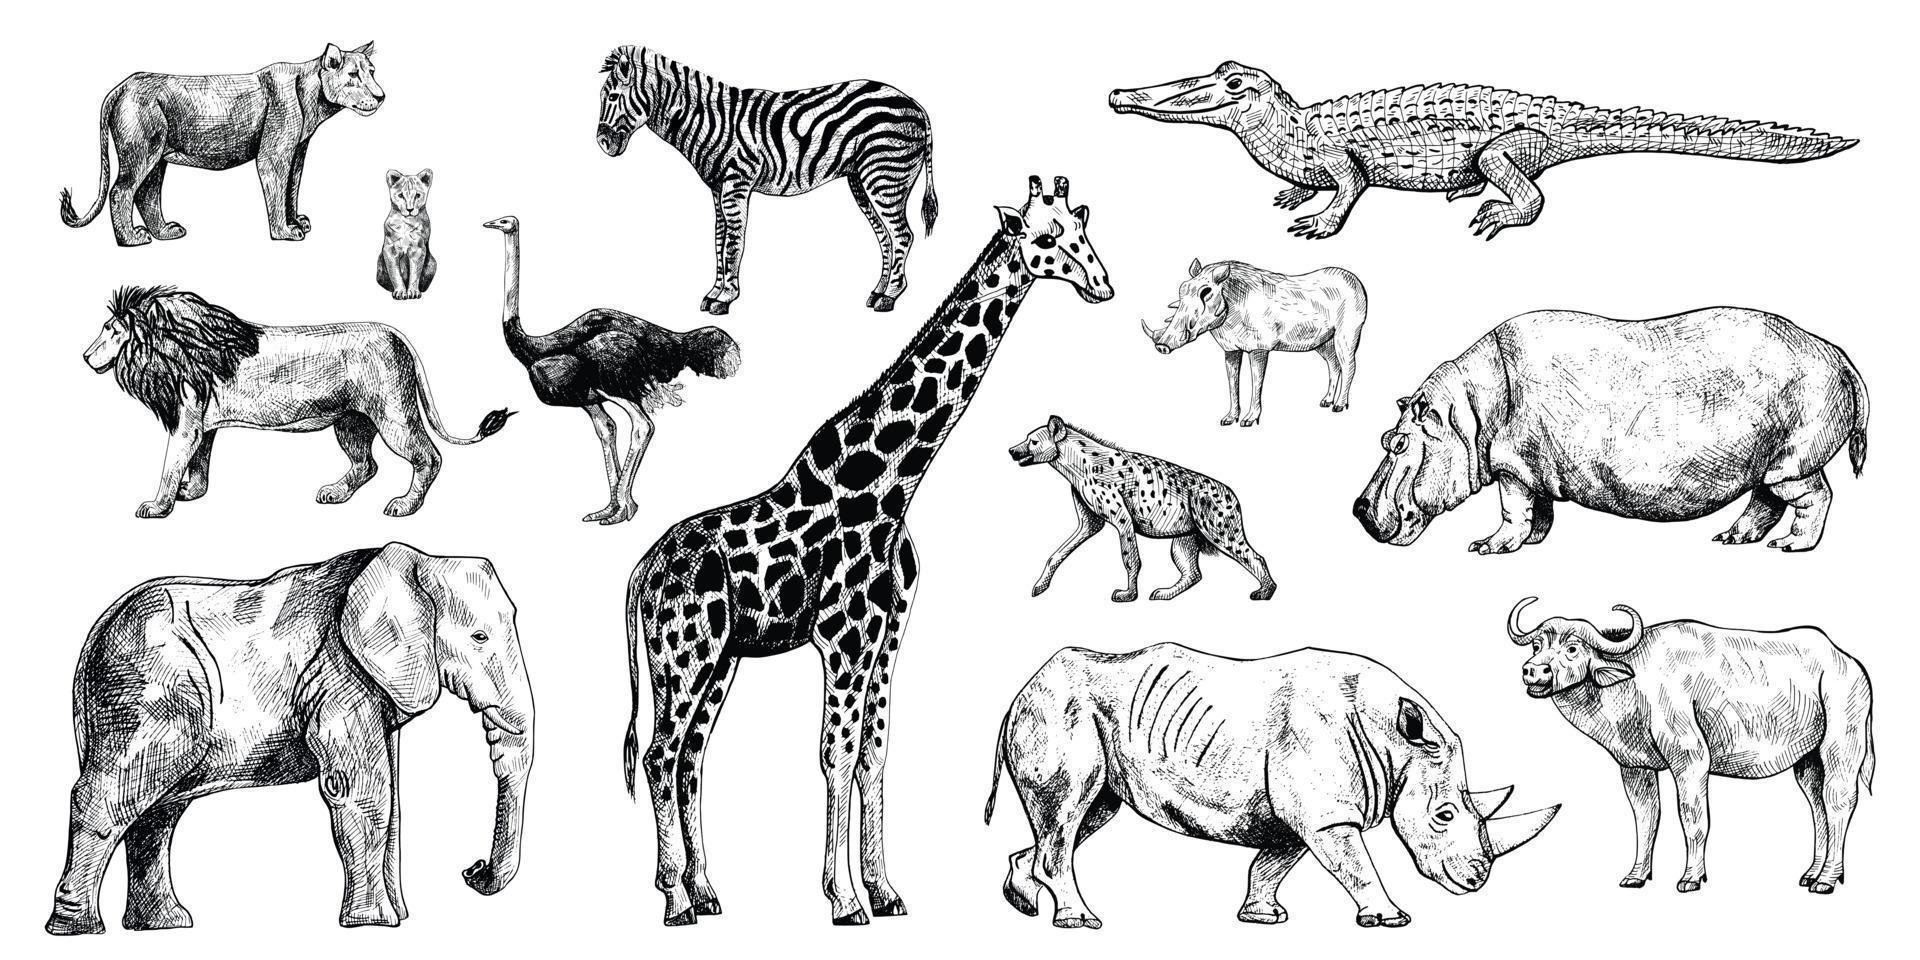 impostare animali africani isolati su sfondo bianco. collezione giraffa, elefante, rinoceronte, ippopotamo, bufalo. vettore